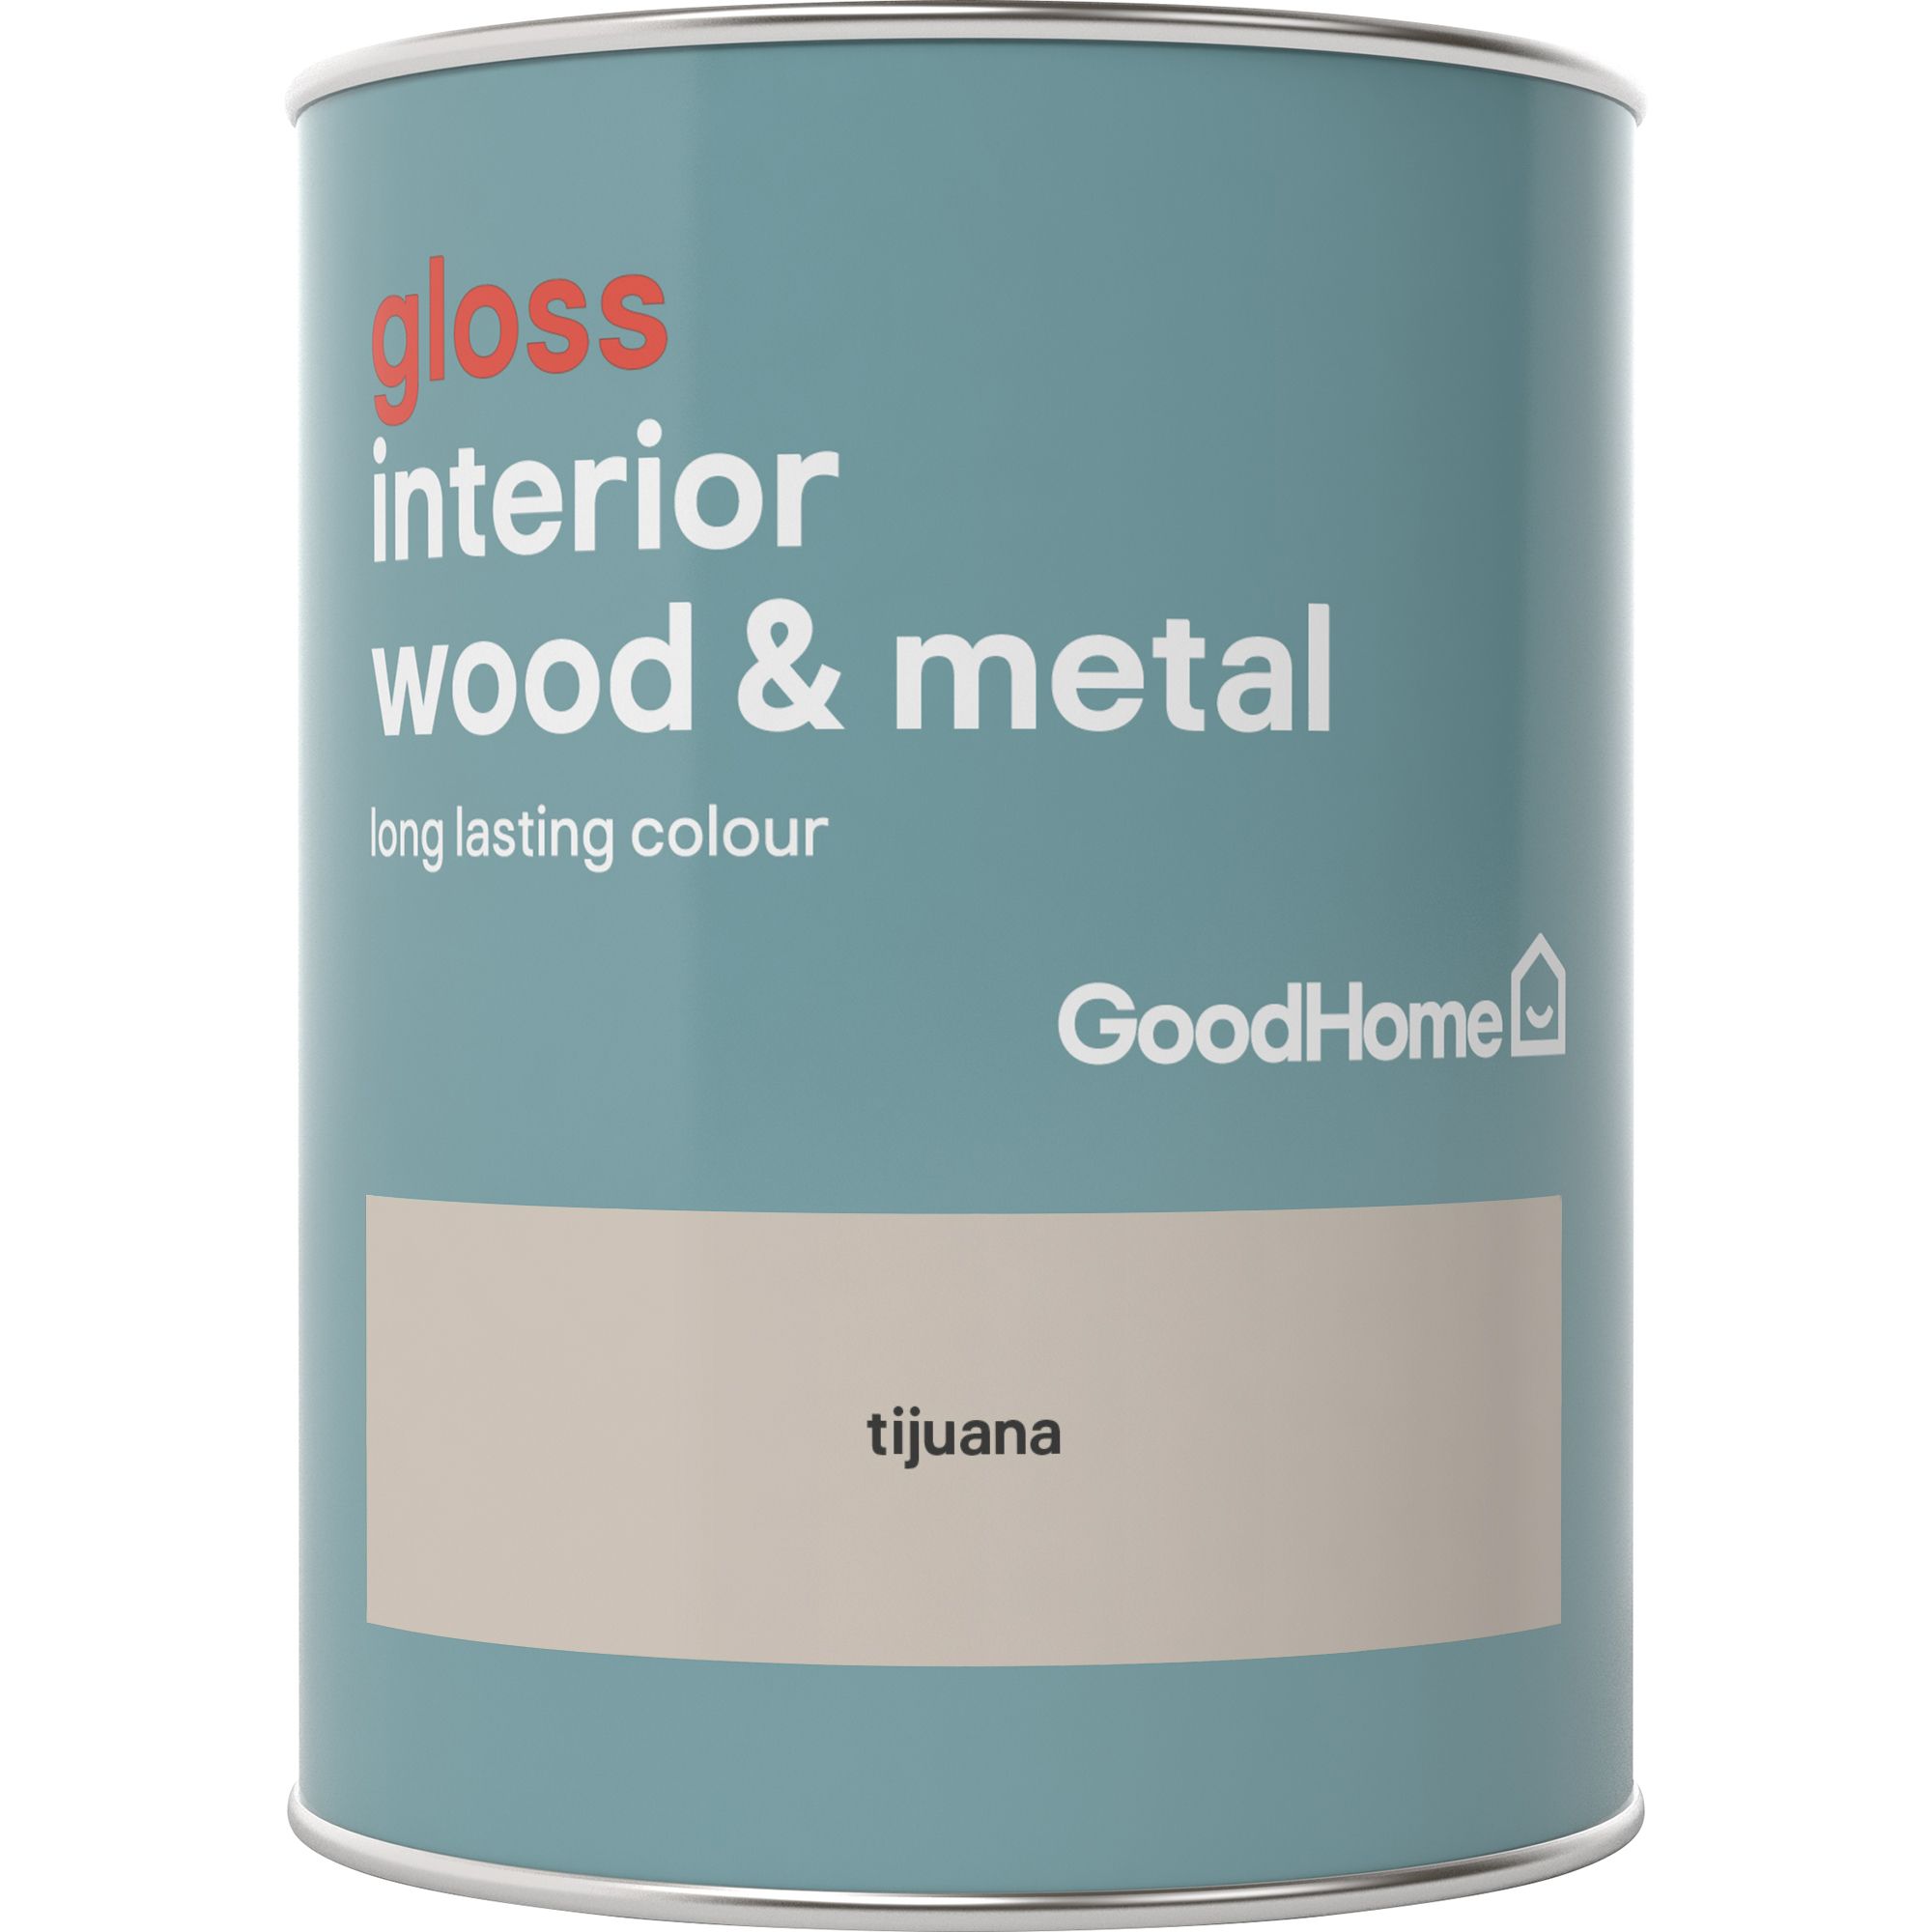 GoodHome Tijuana Gloss Metal & wood paint, 750ml